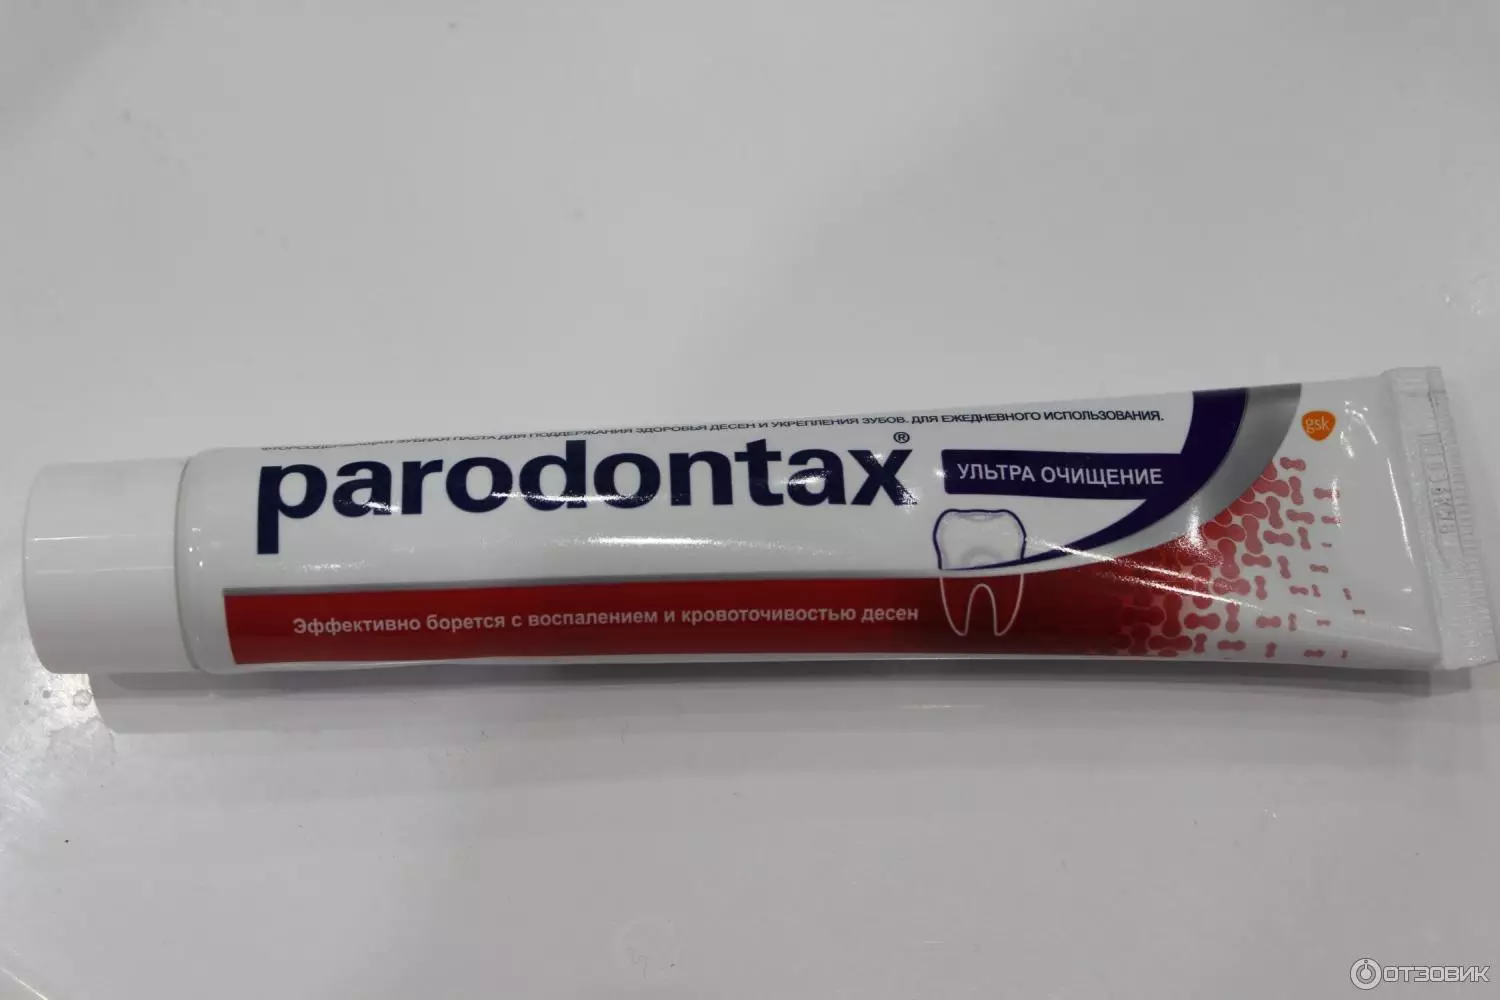 Parodontax ၏သွားတိုက်ဆေး - သွားဖုံးကျန်းမာရေး, ဖွဲ့စည်းမှု, Ultra စင်ကြယ်ခြင်းငါးပိအတွက်ဖလိုရိုက်များမရှိဘဲ 